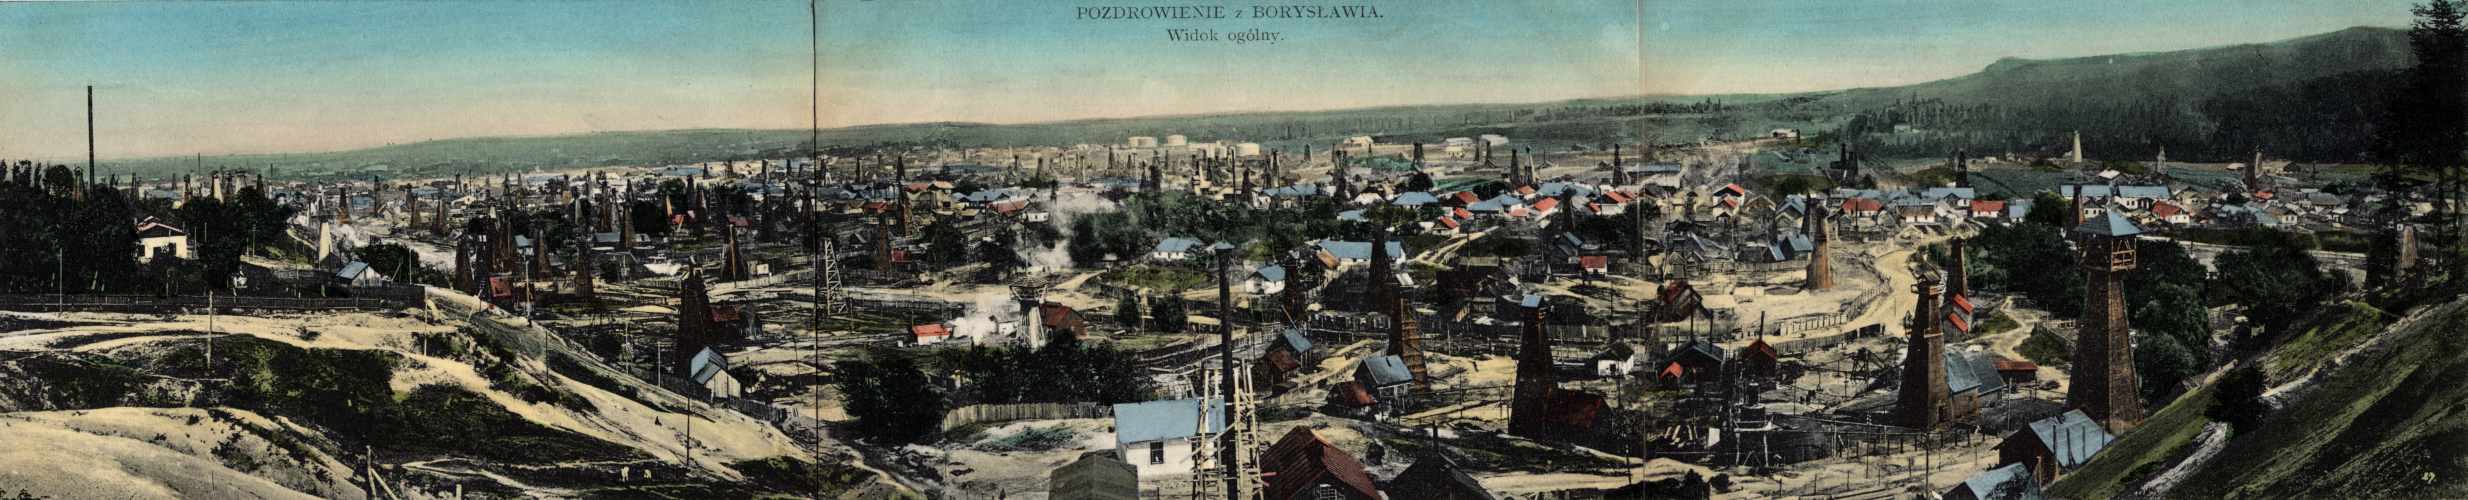 panorama-boryslav-oil-town